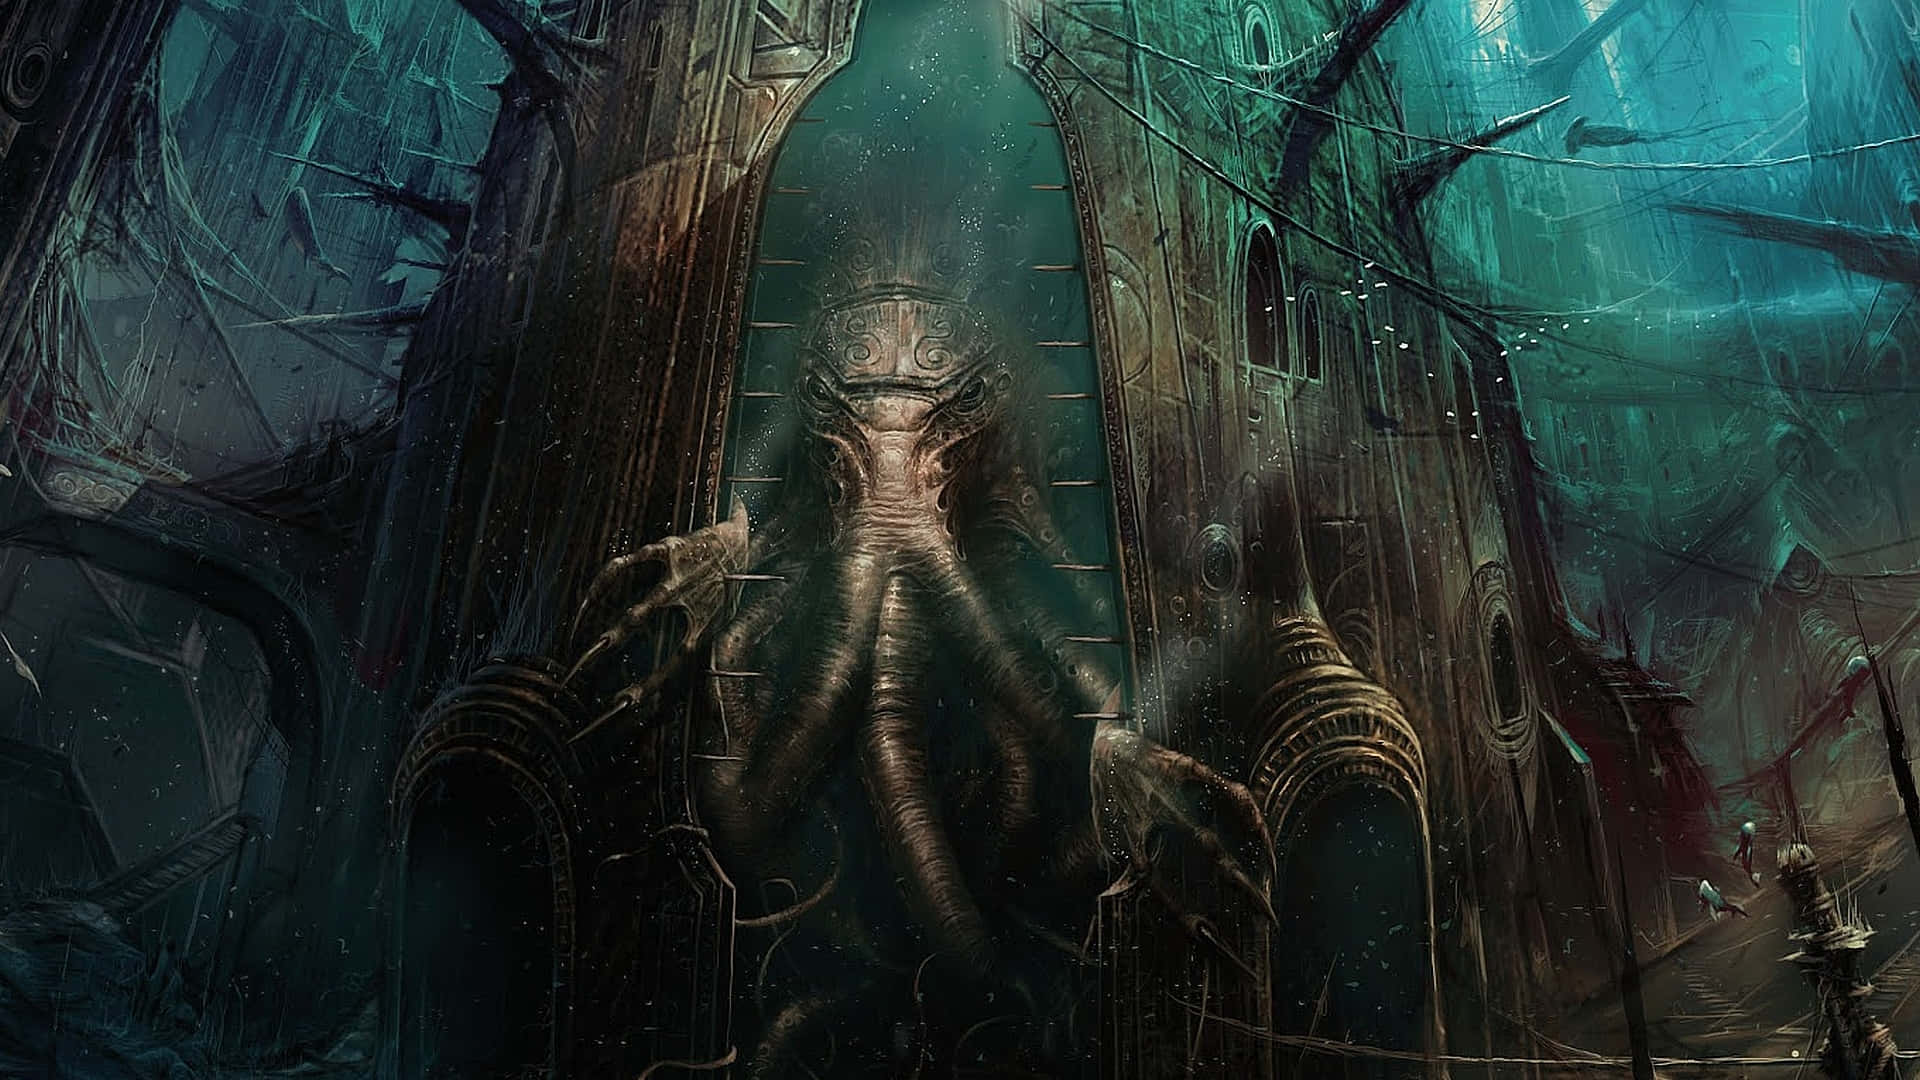 Enmörk Och Dyster Bild Av En Av De Mest Ikoniska Varelserna I H.p. Lovecrafts Berättelser - Den Mäktiga Cthulhu!